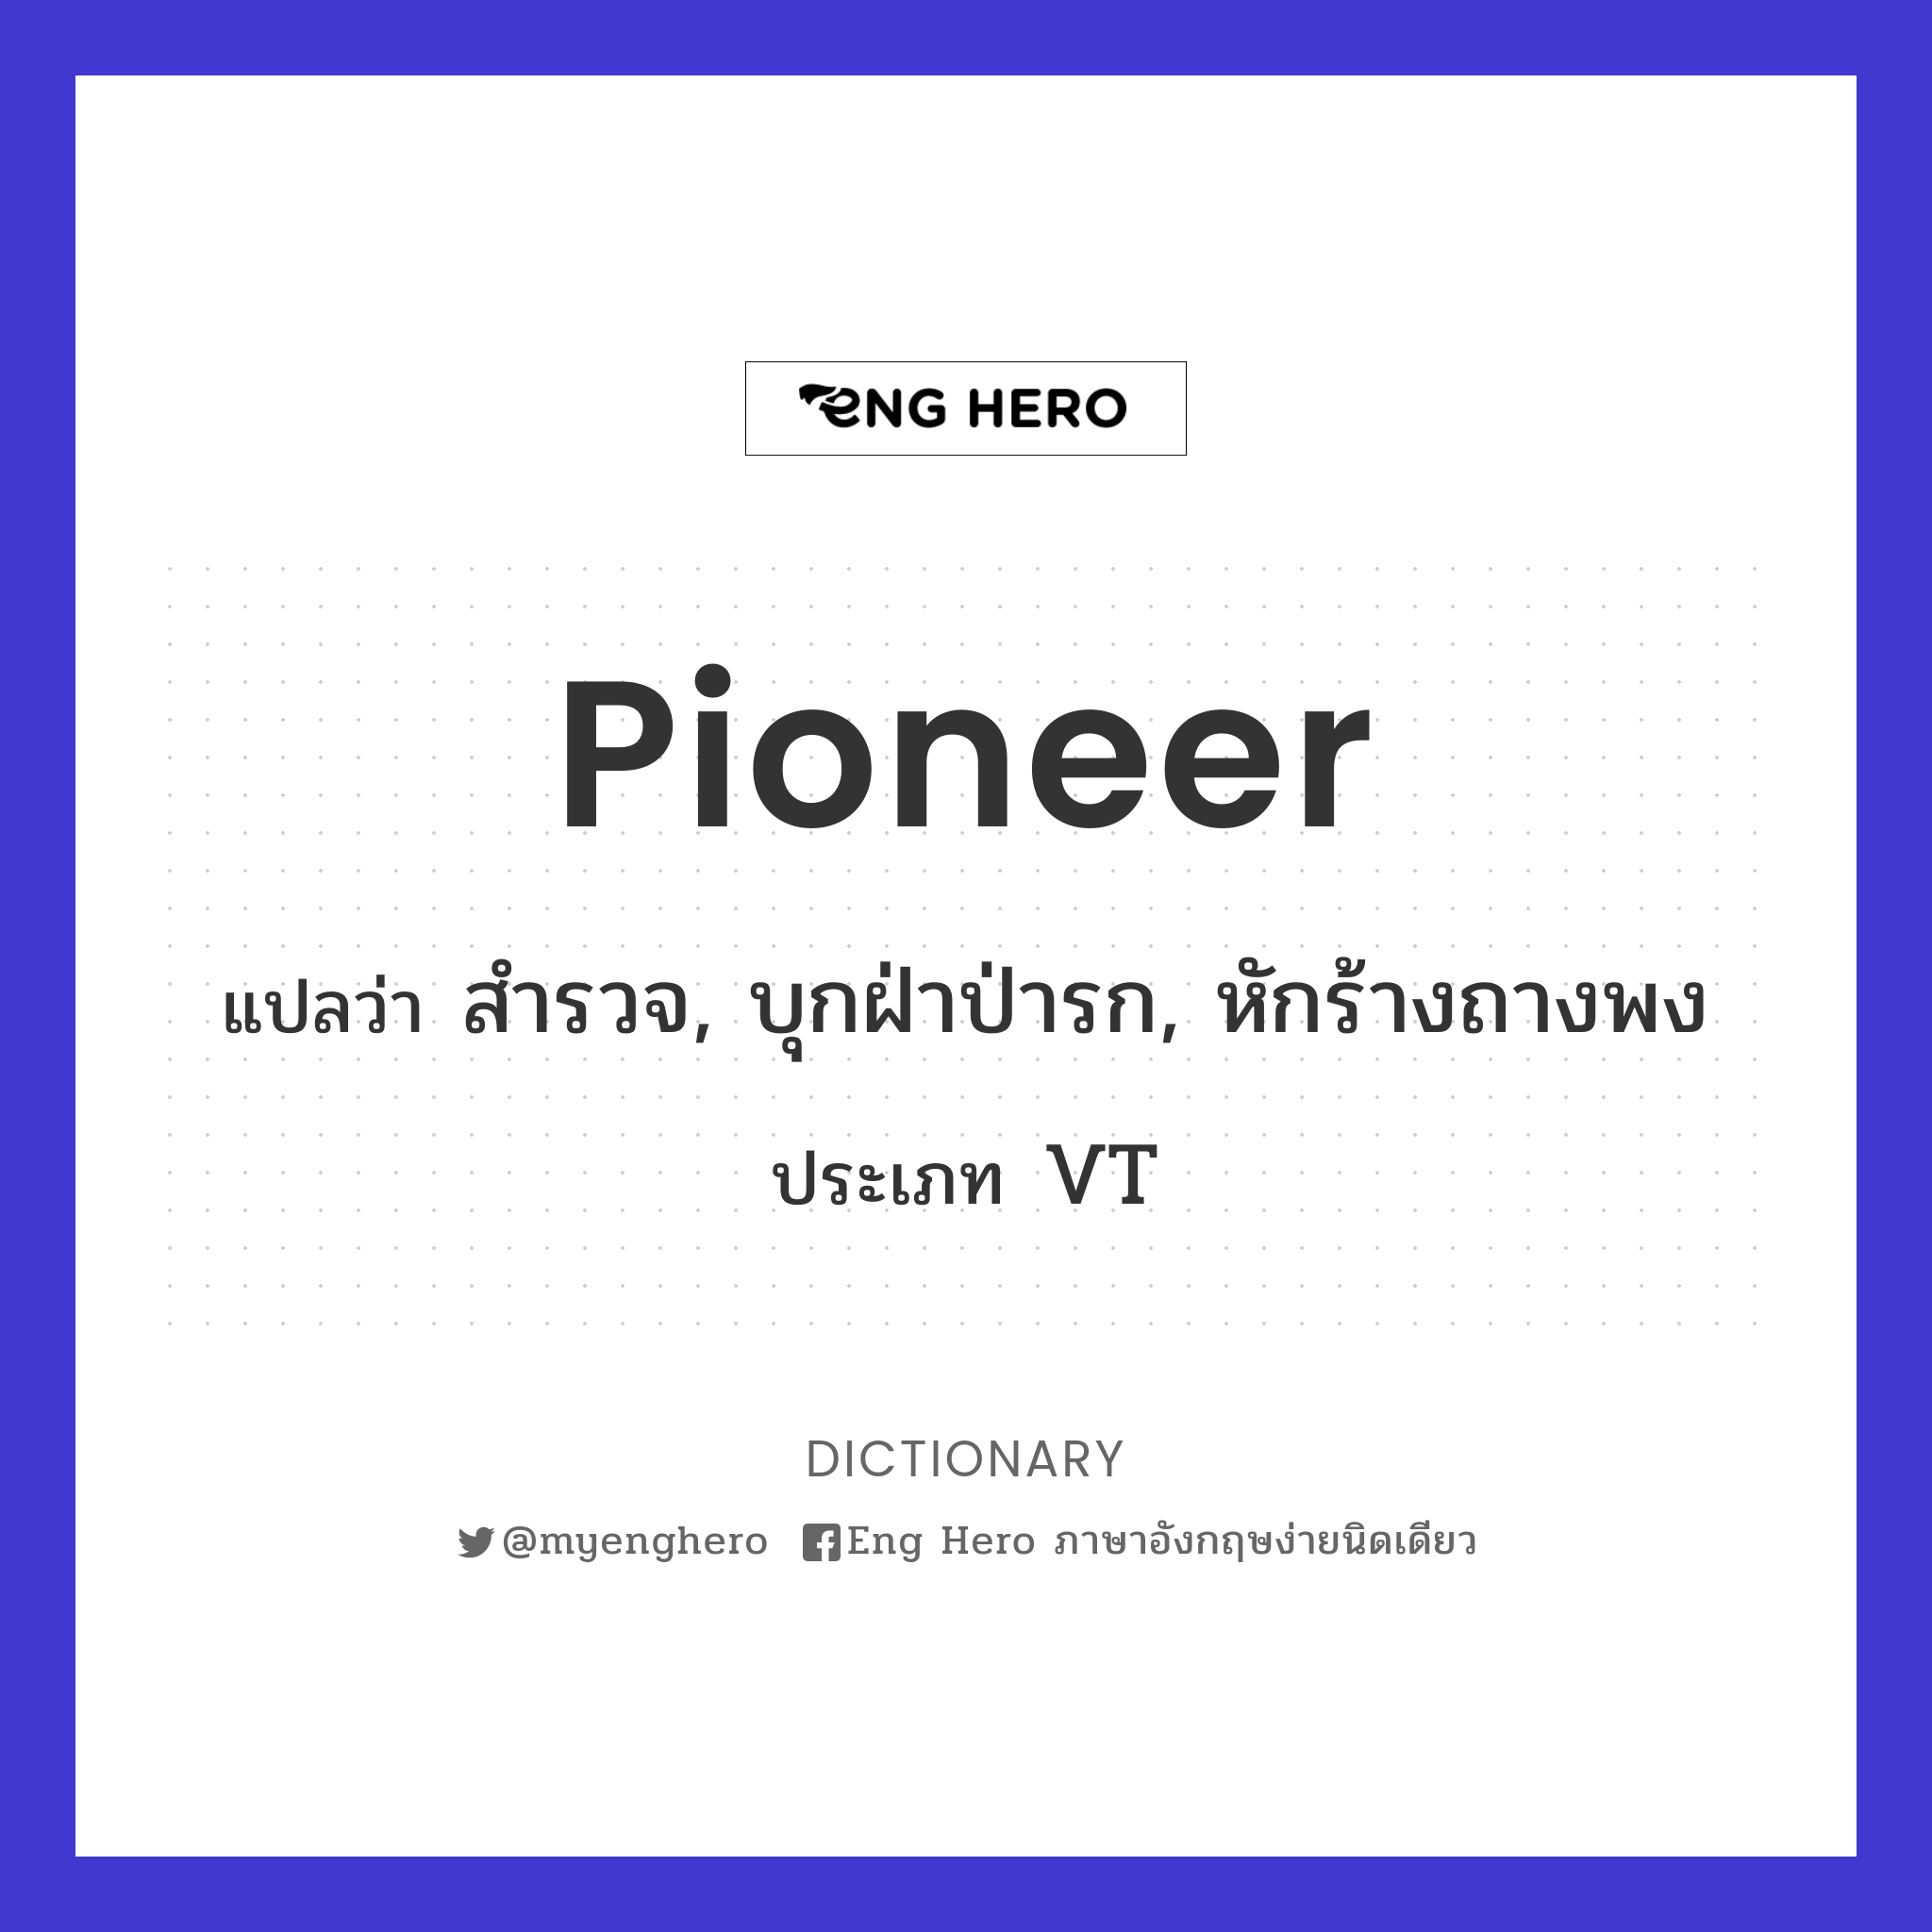 pioneer